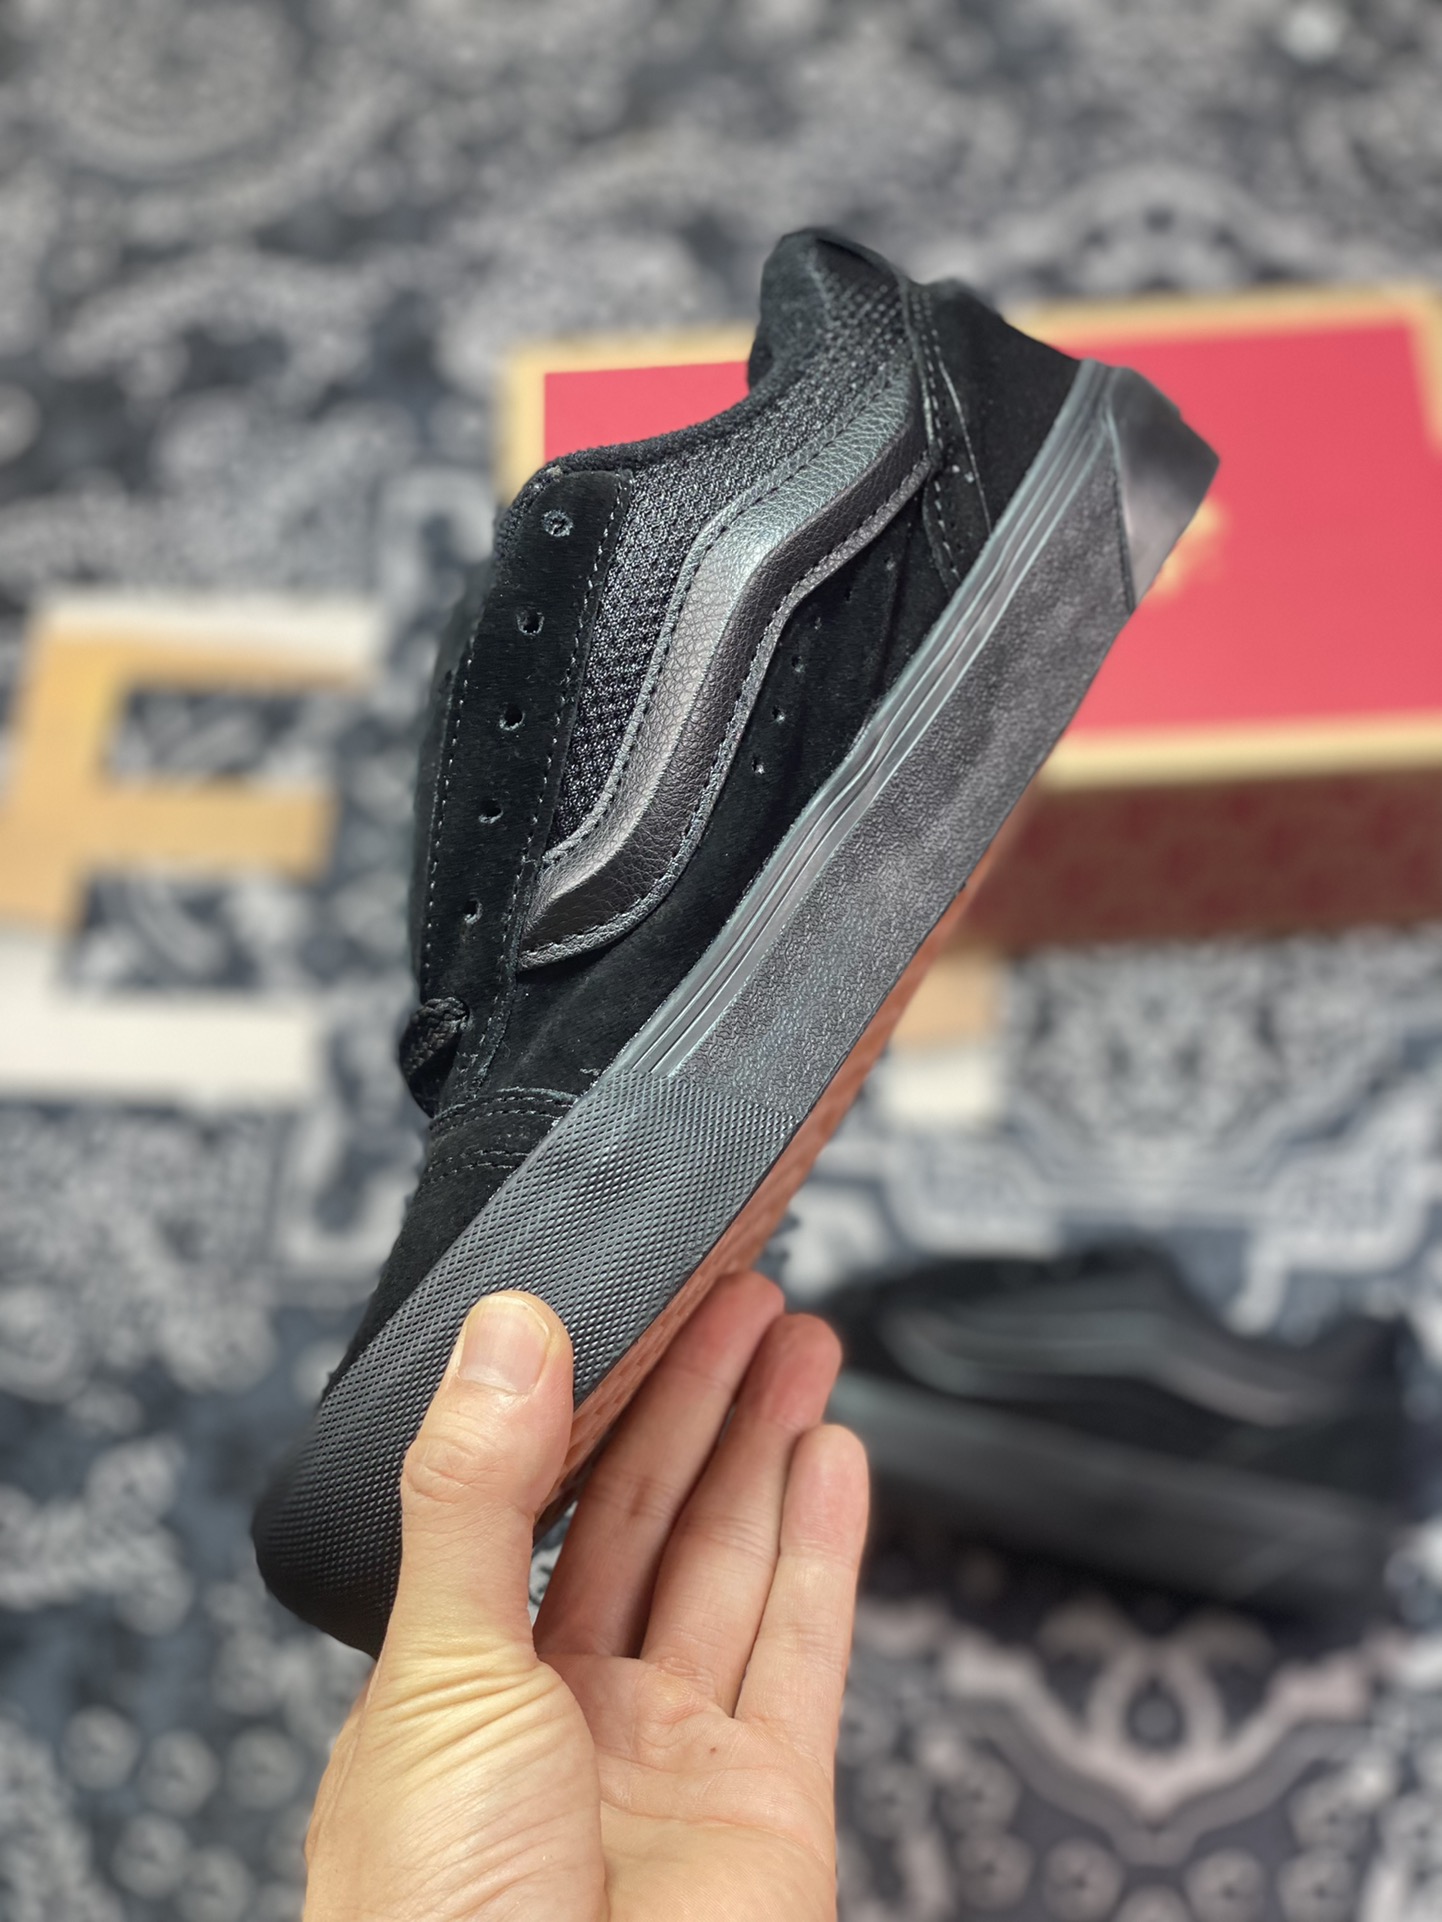 Vans Knu-Skool VR3 LX bread shoes Black Warrior low-top retro casual vulcanized sneakers